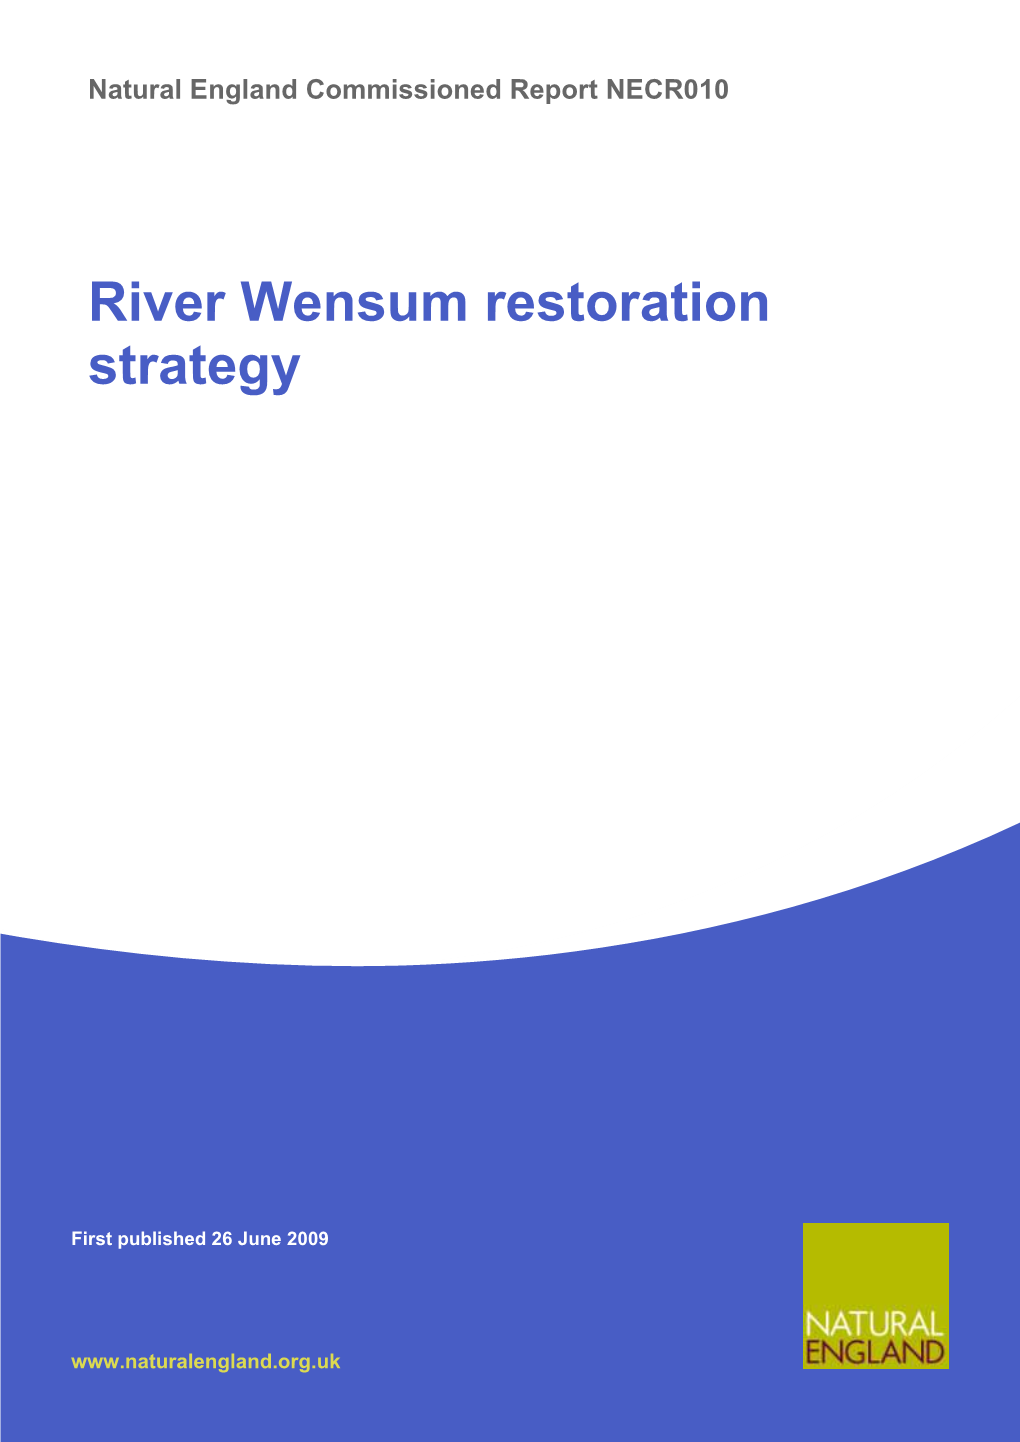 River Wensum Restoration Strategy